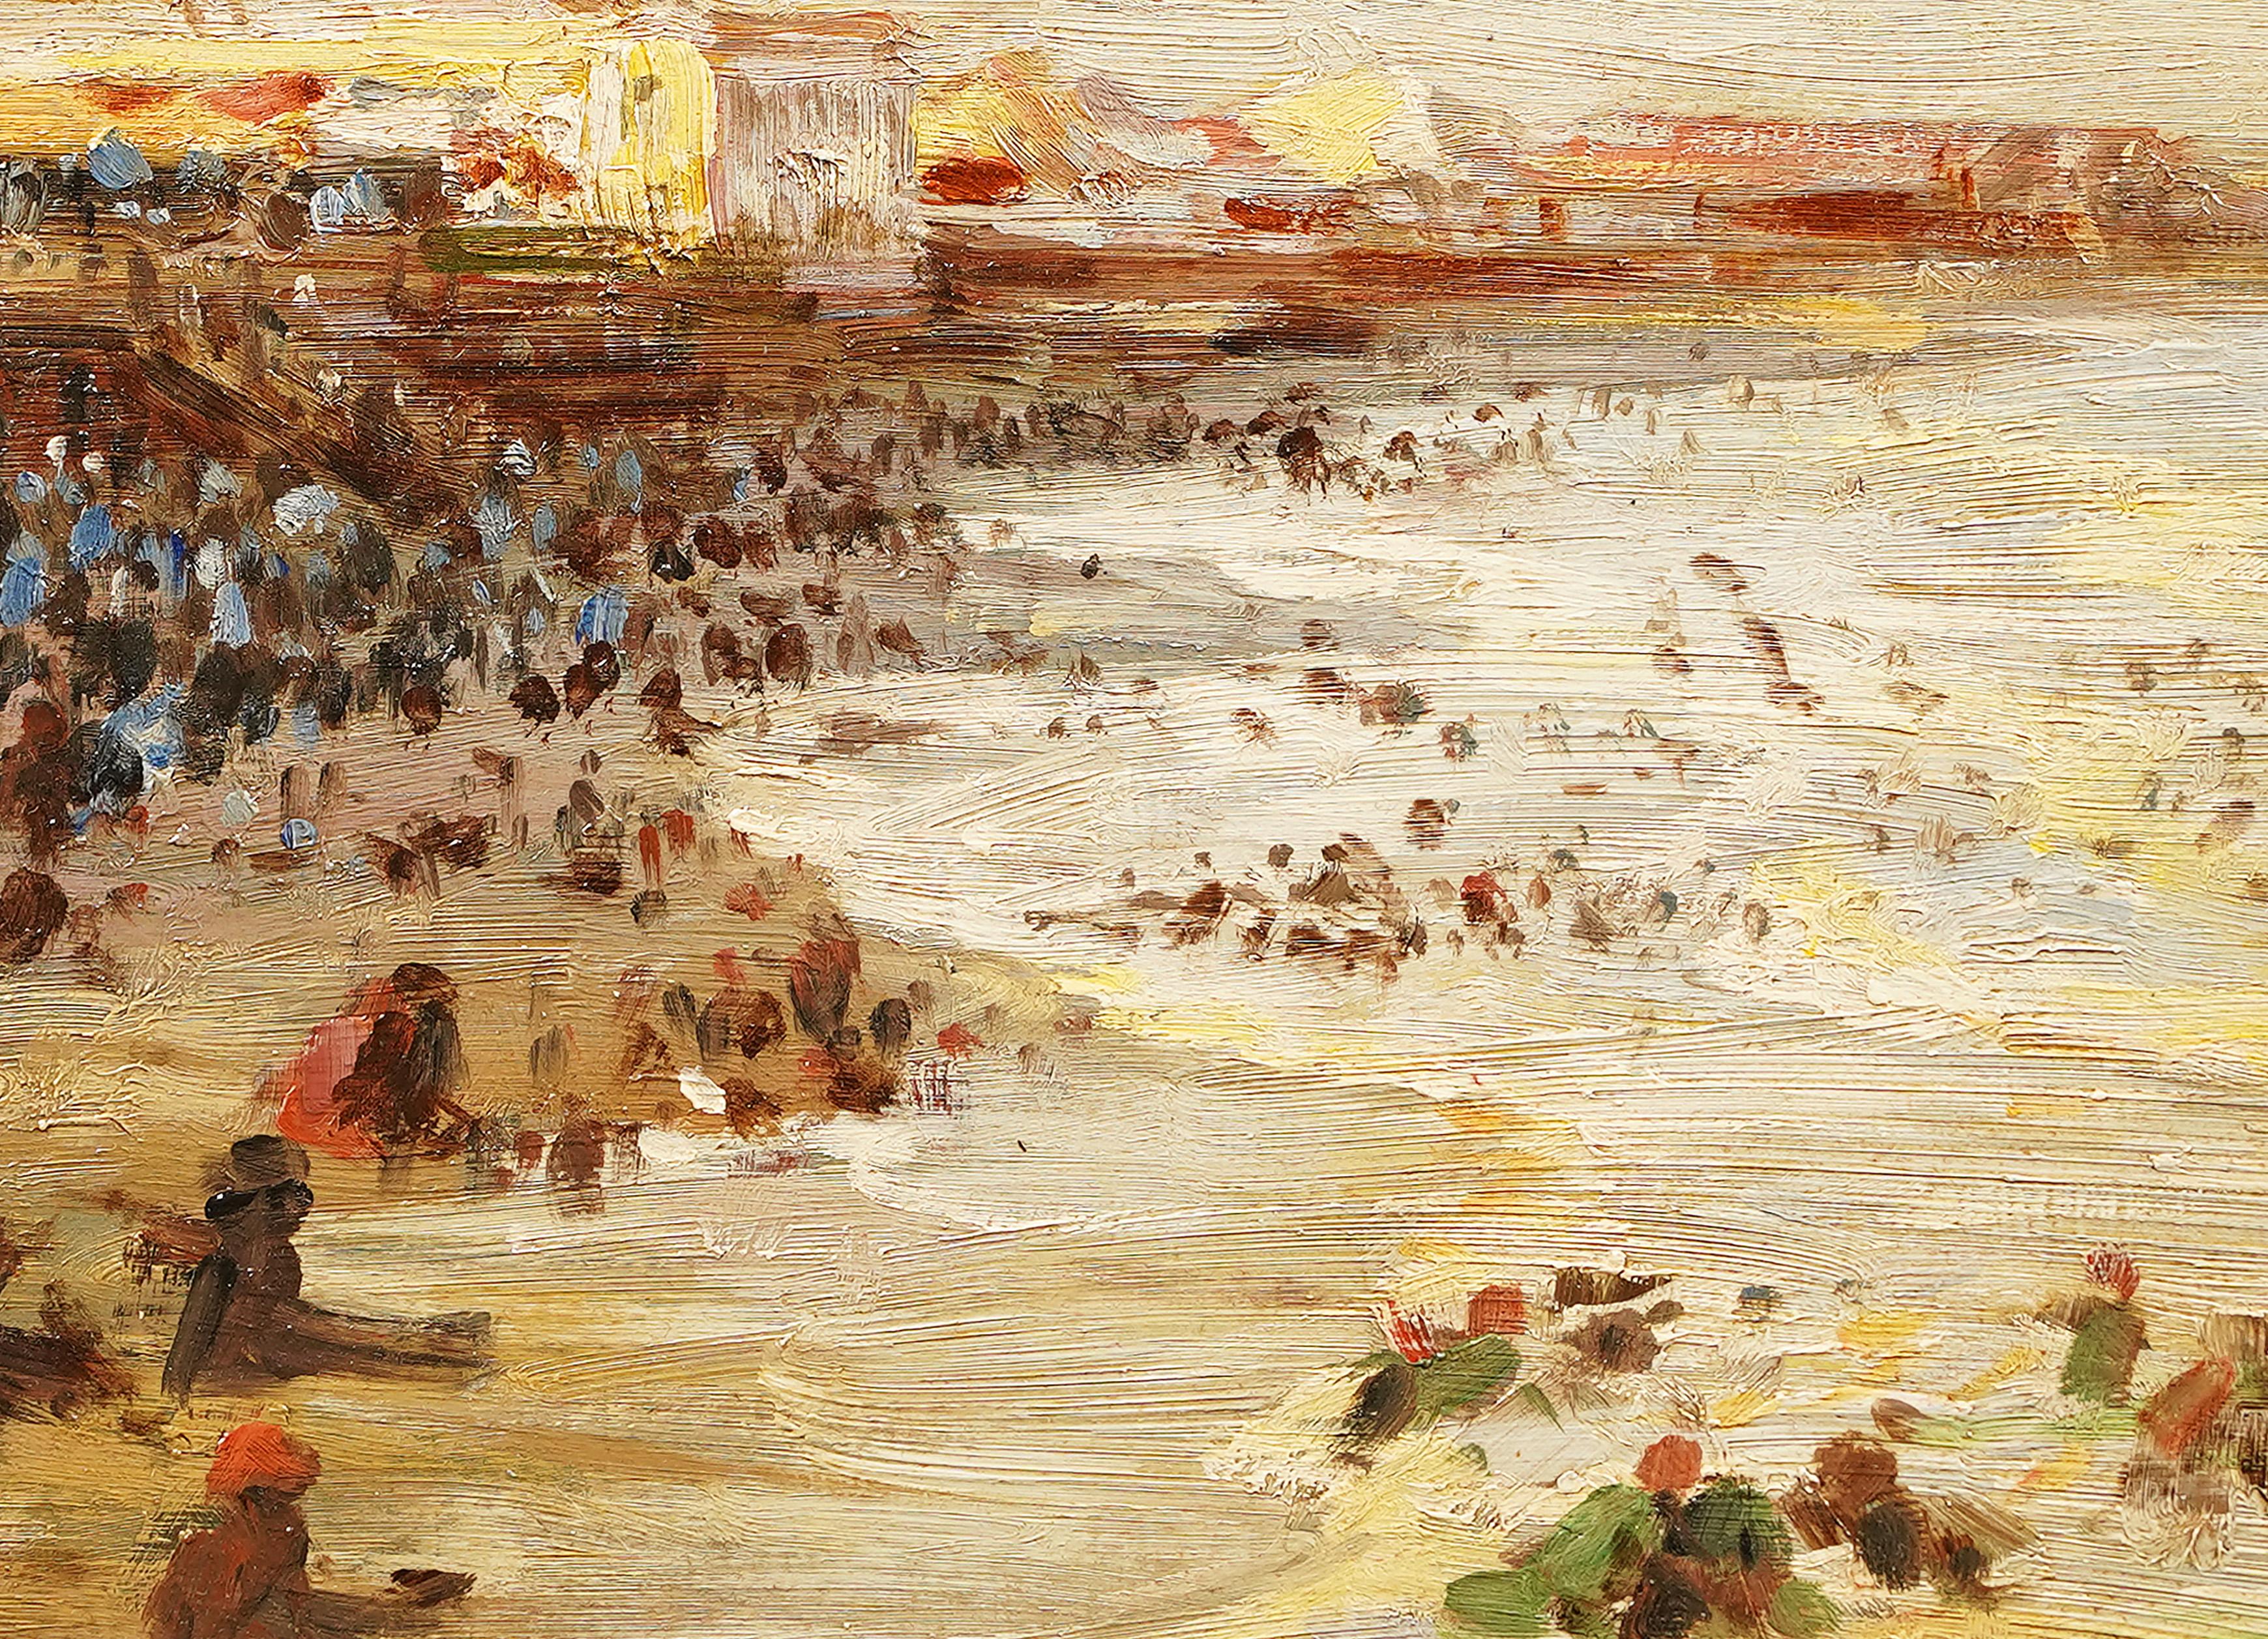 Scène de plage impressionniste américaine ancienne  peinture à l'huile.  Huile sur planche.  Aucune signature n'a été trouvée.  Encadré.  Taille de l'image, 12L x 9H.